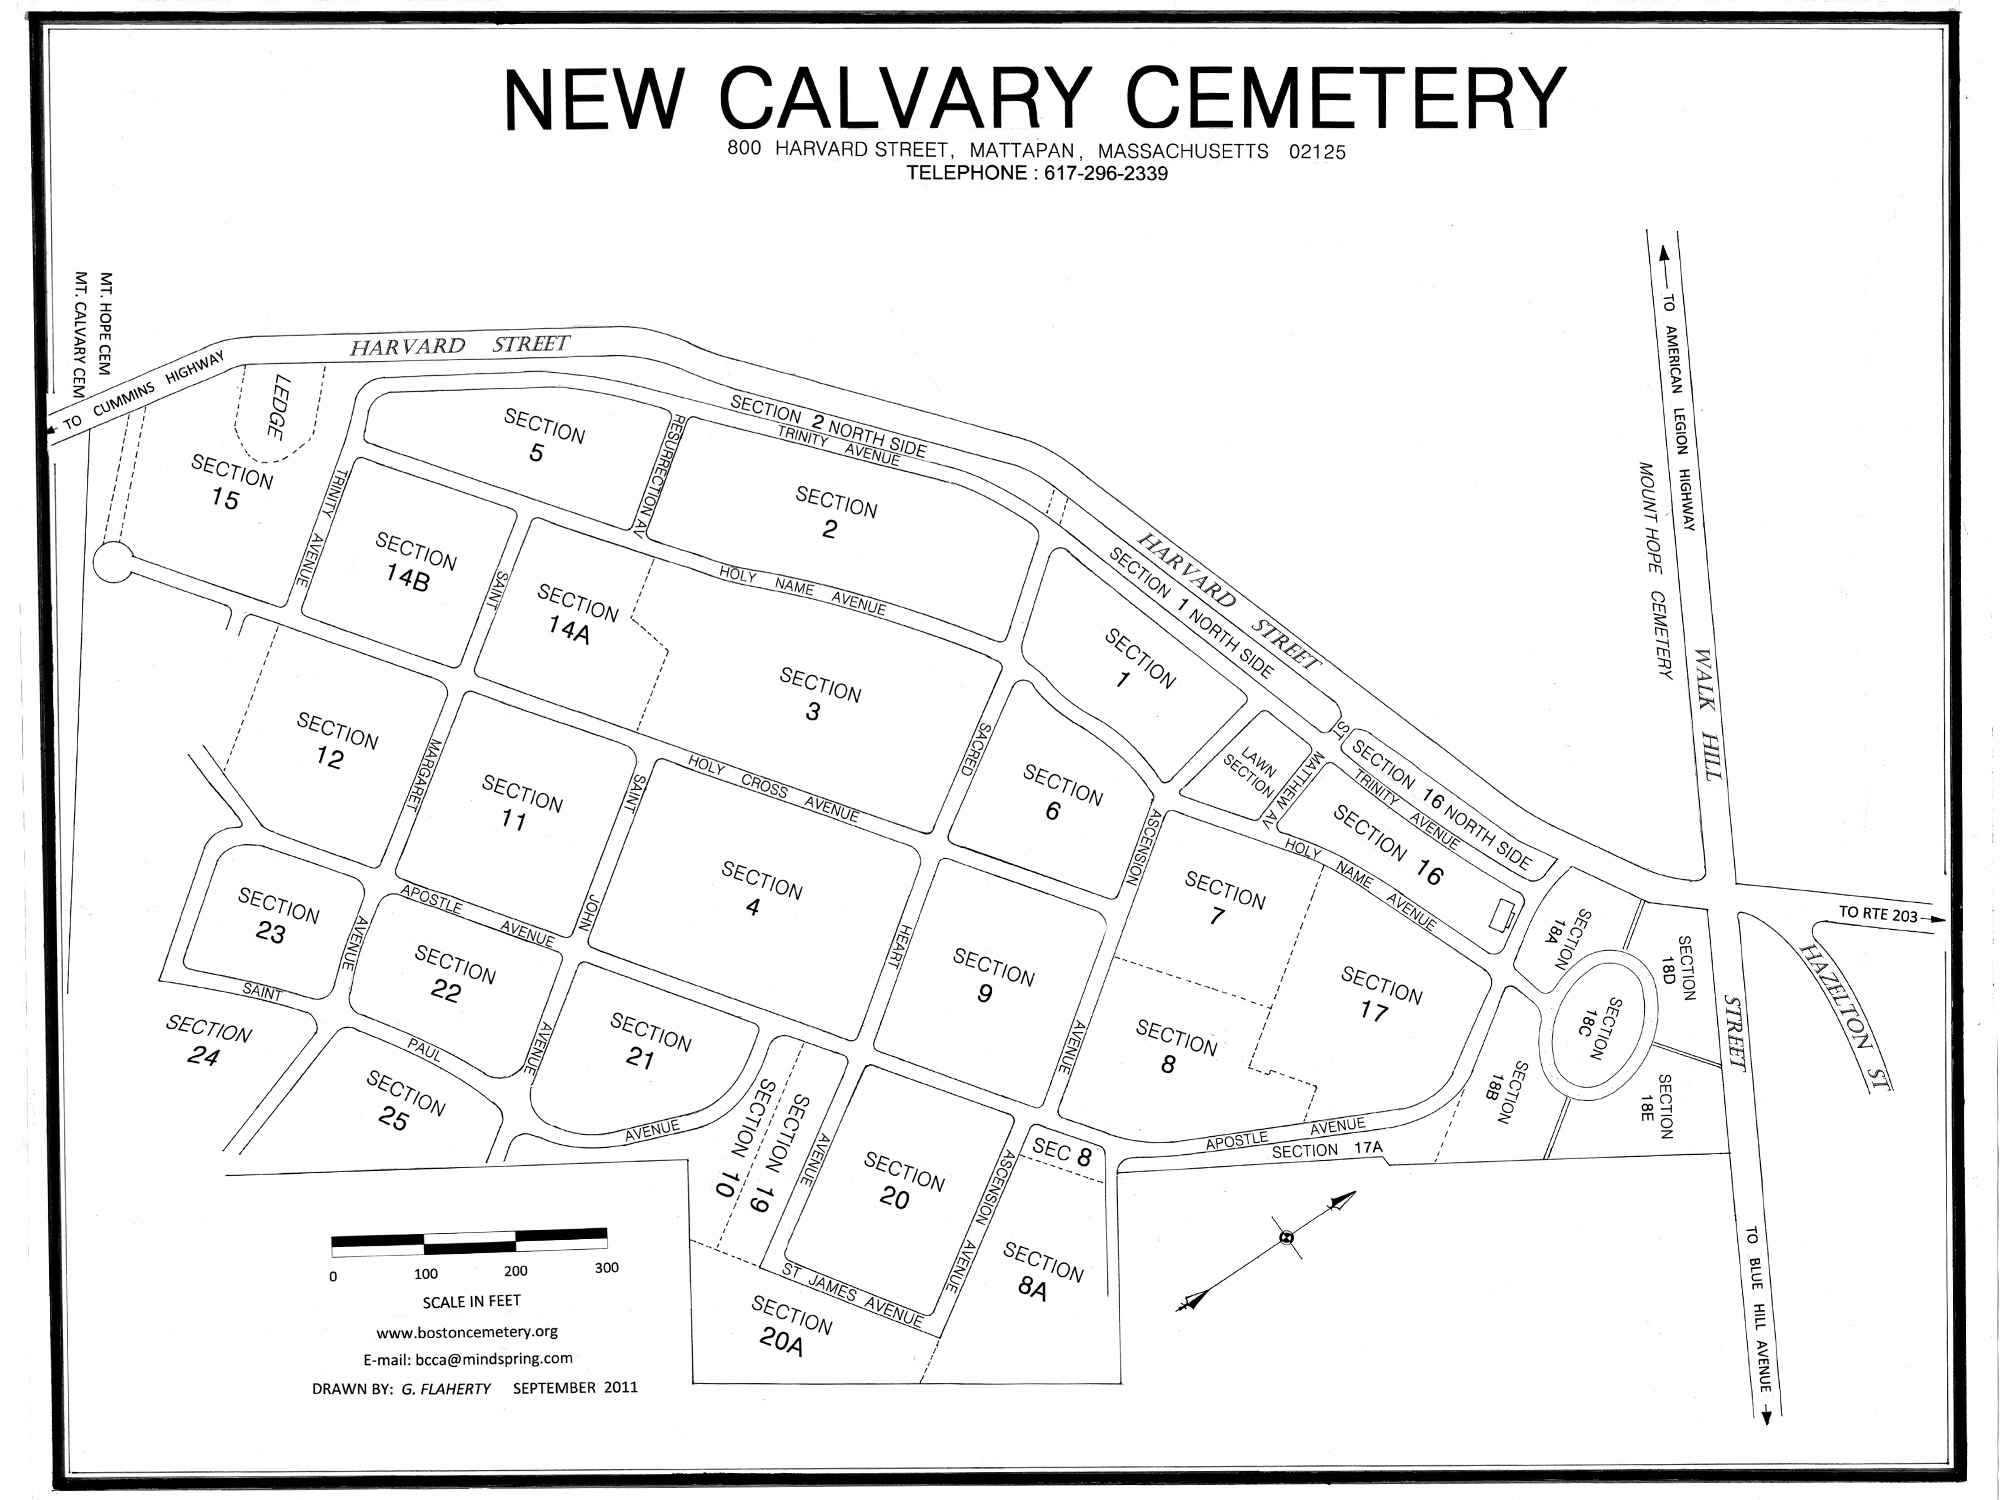 Cemetery map of New Calvary Cemetery in Mattapan, Massachusetts.